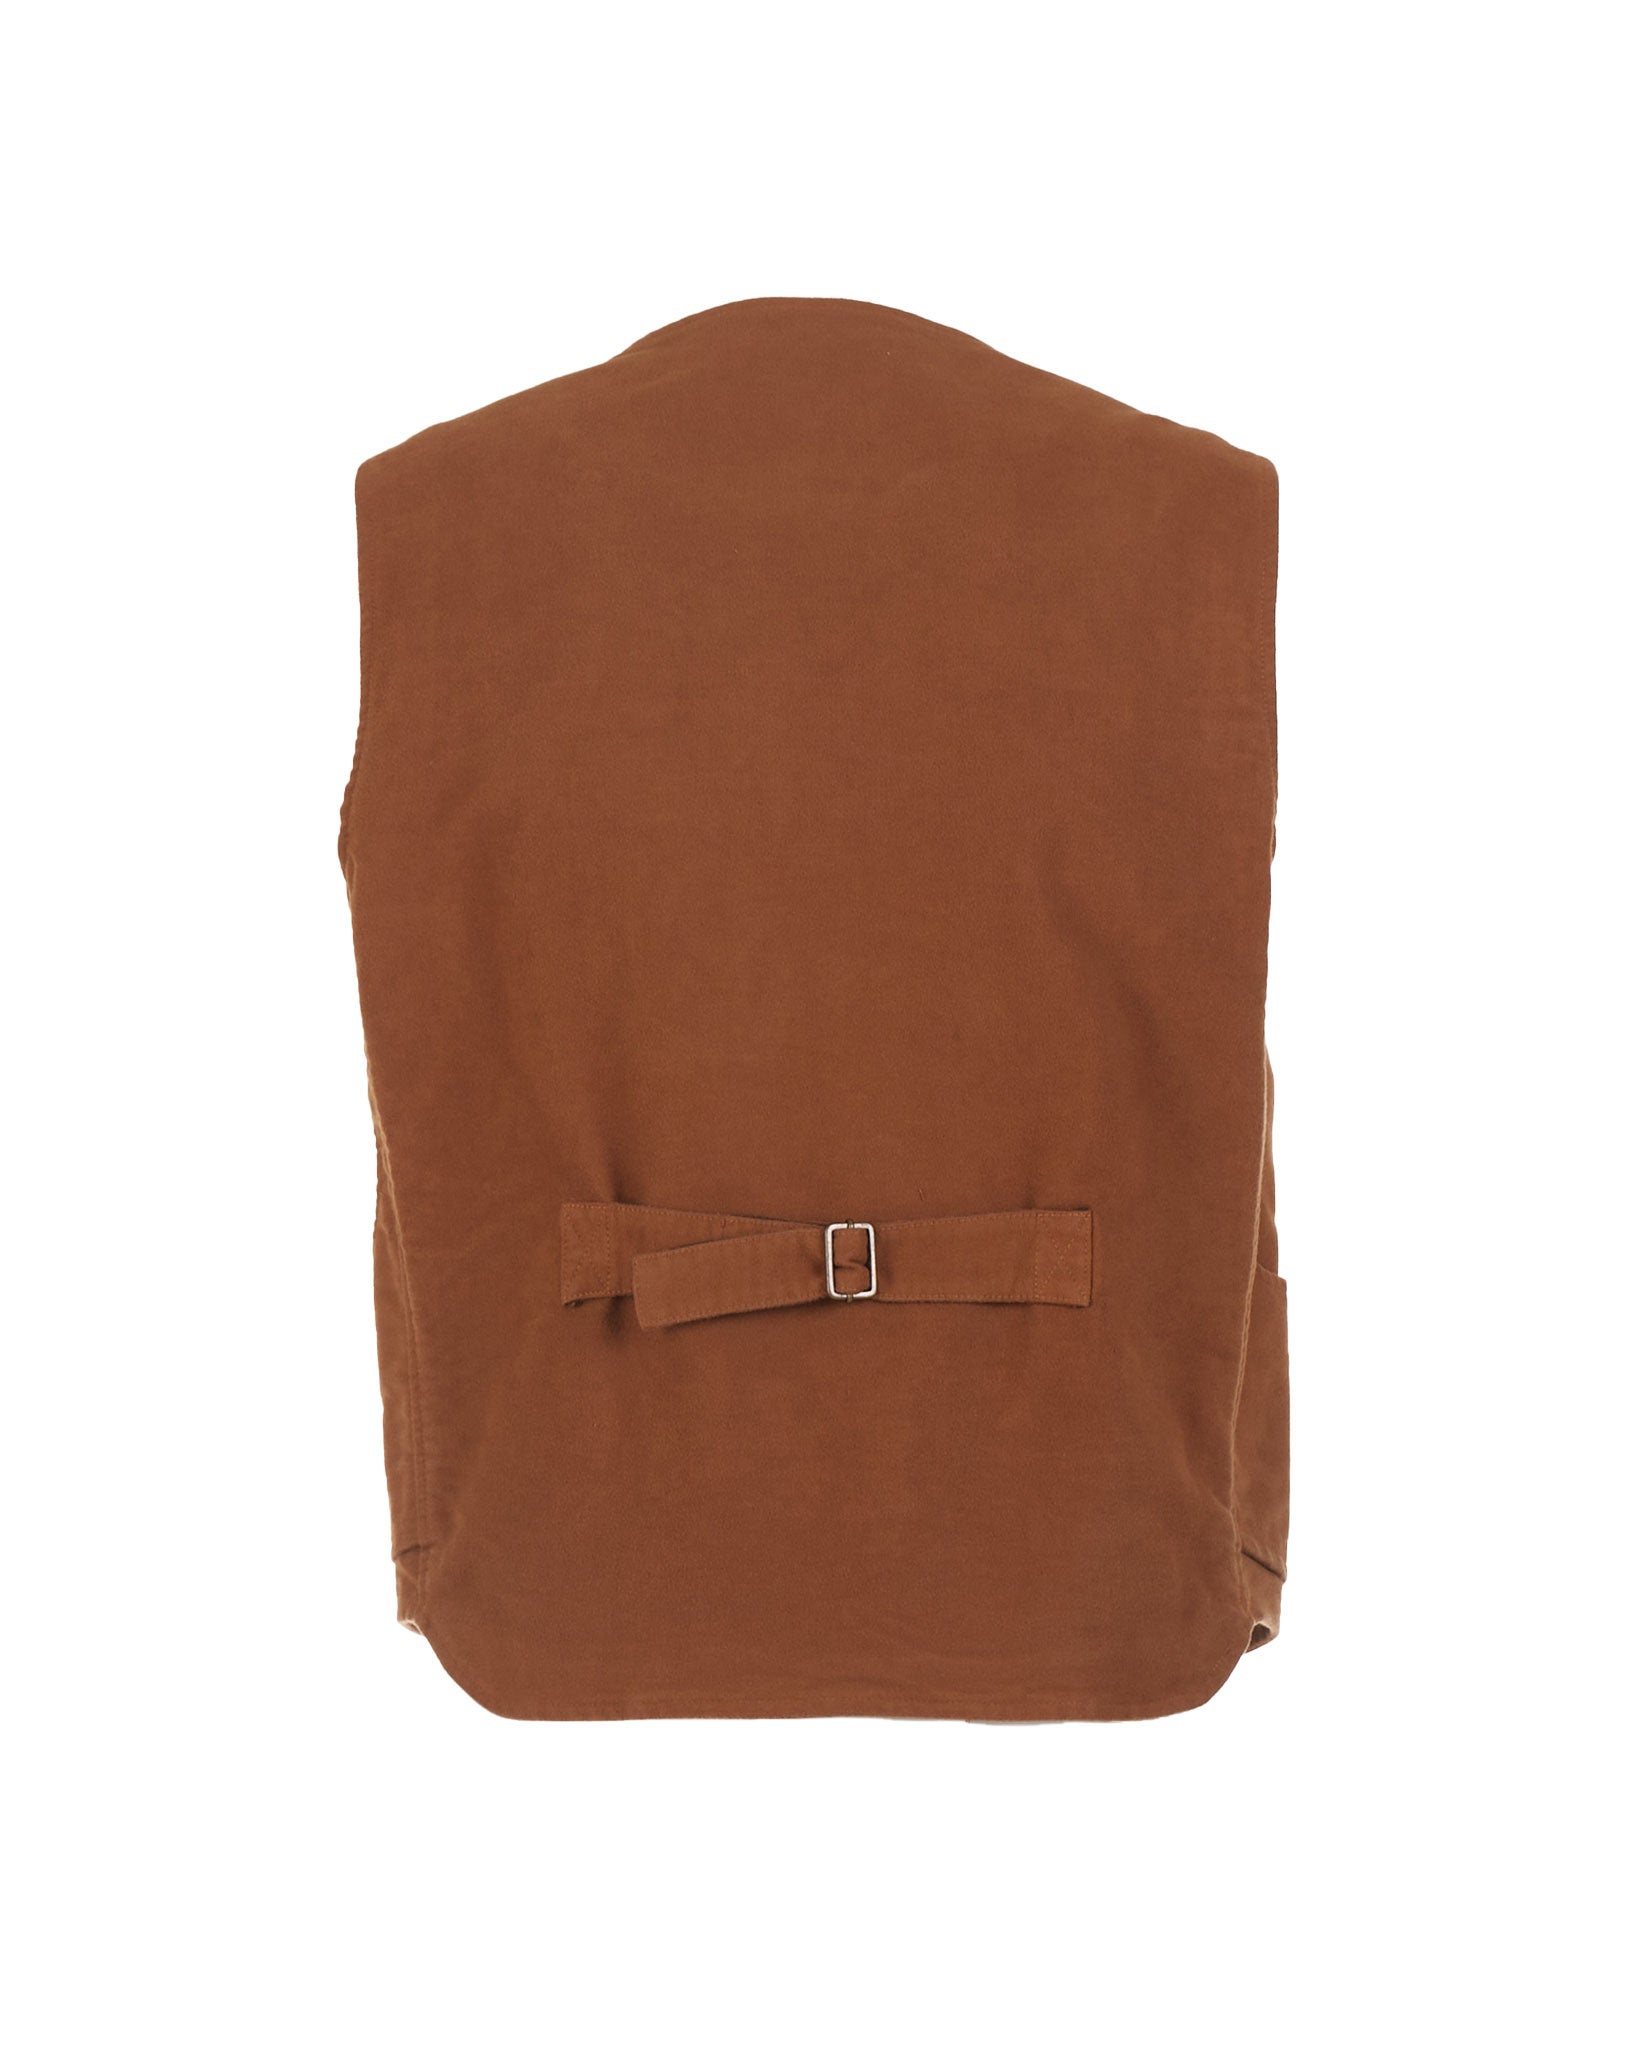 Iconic moleskin cotton vest